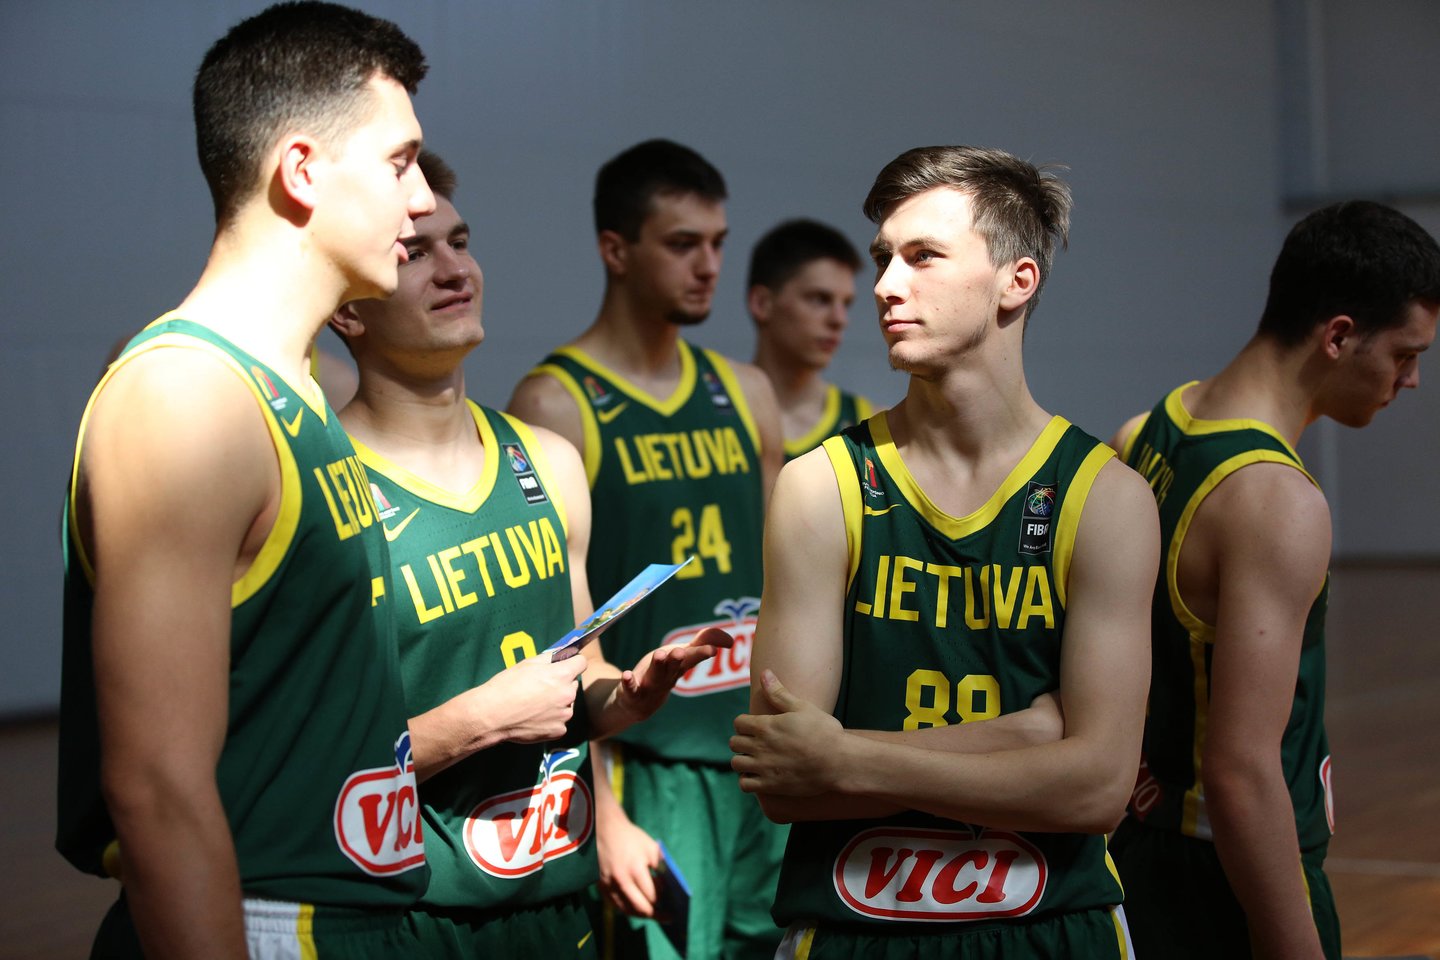 Lietuvos devyniolikmečių rinktinė dalyvavo prieš pasaulio čempionatą surengtoje foto sesijoje<br> fiba.com nuotr